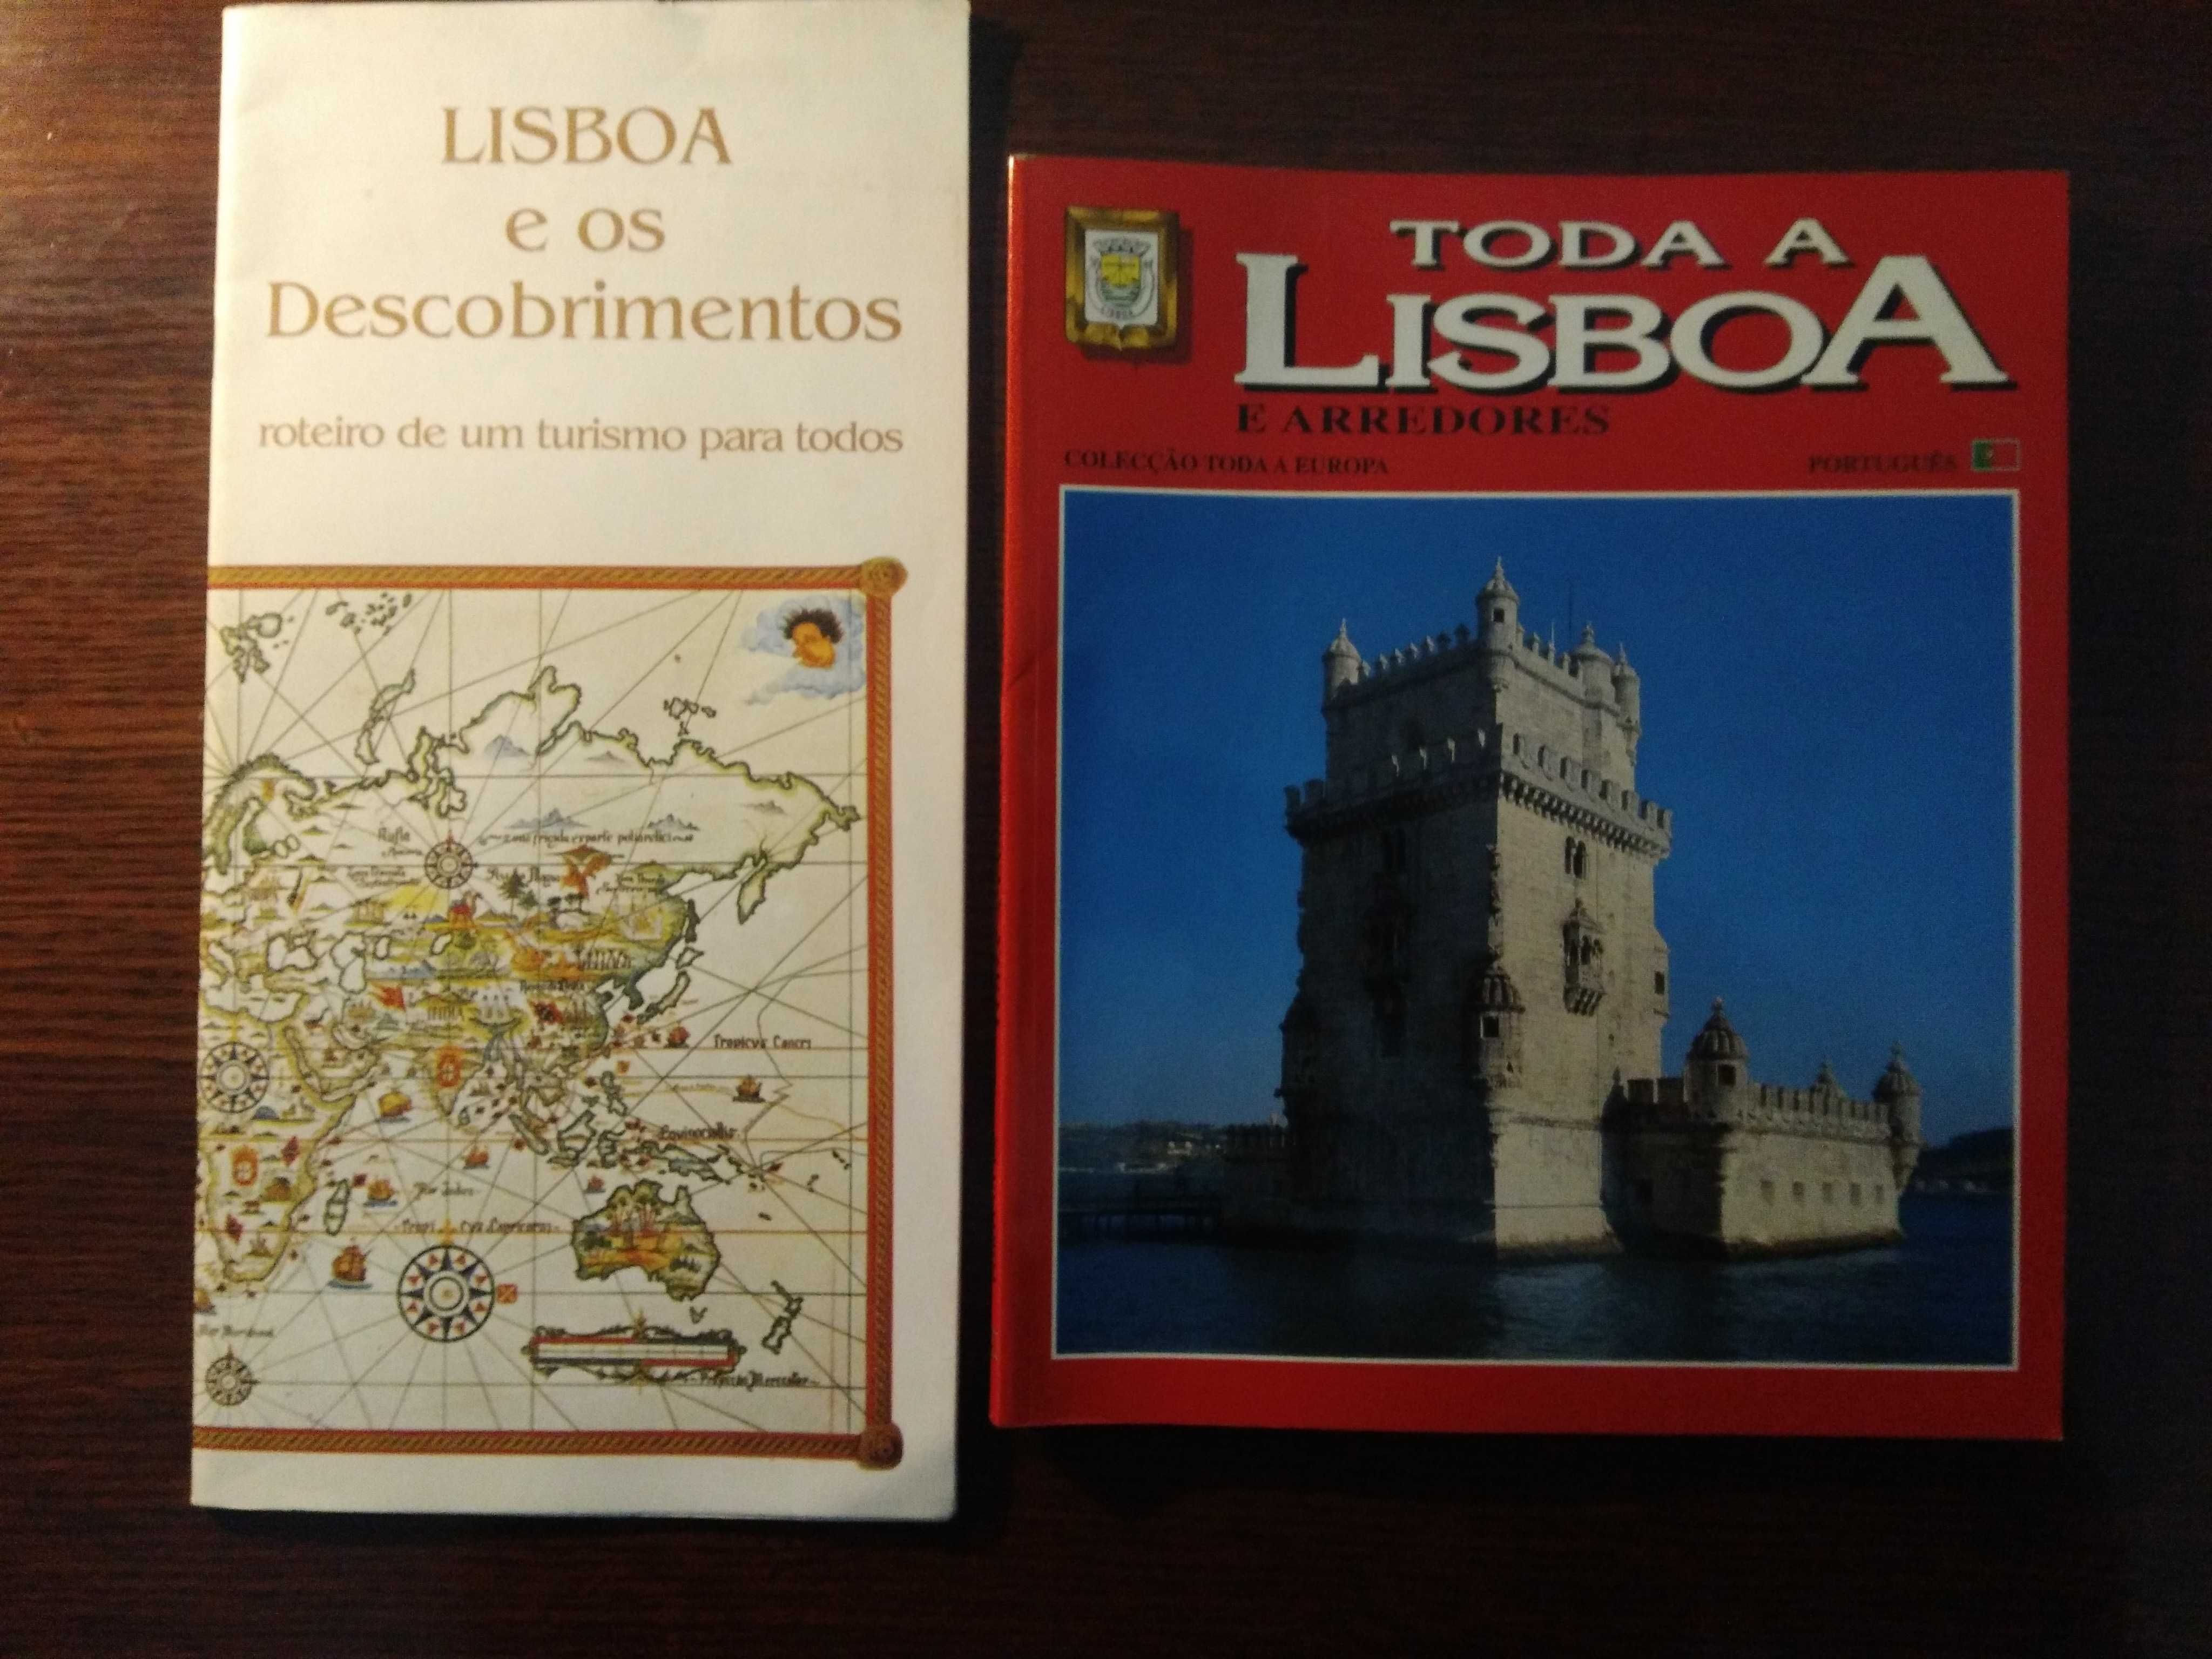 Lisboa e os Descobrimentos - Toda a Lisboa e Arredores